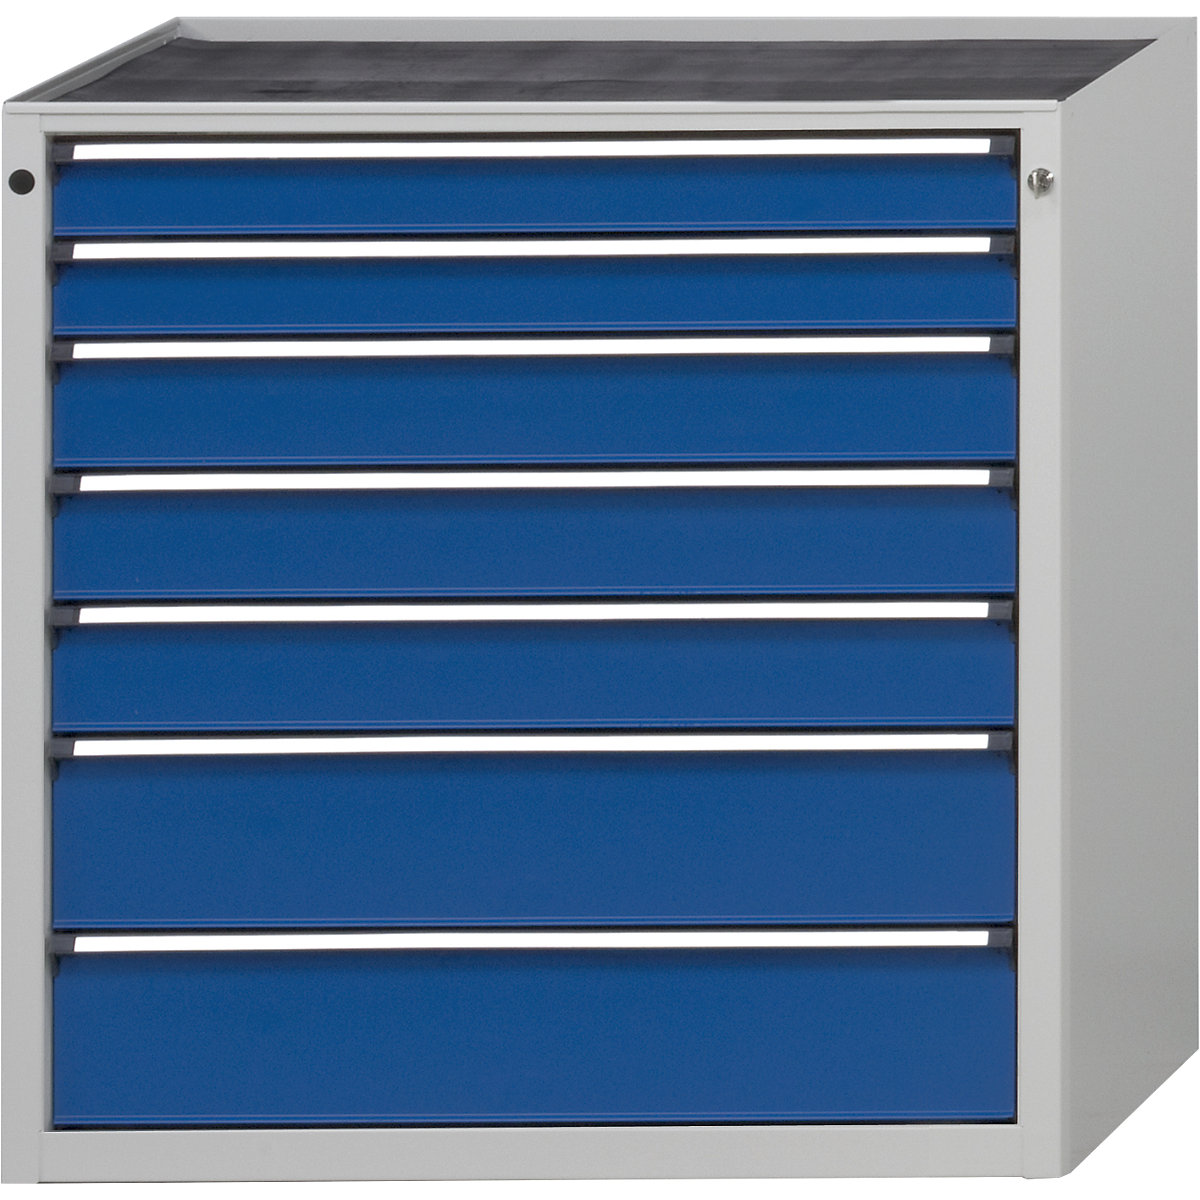 Armoire à tiroirs sans plateau – ANKE, largeur 910 mm, charge max. tiroirs 200 kg, 7 tiroirs, façade bleu gentiane-5